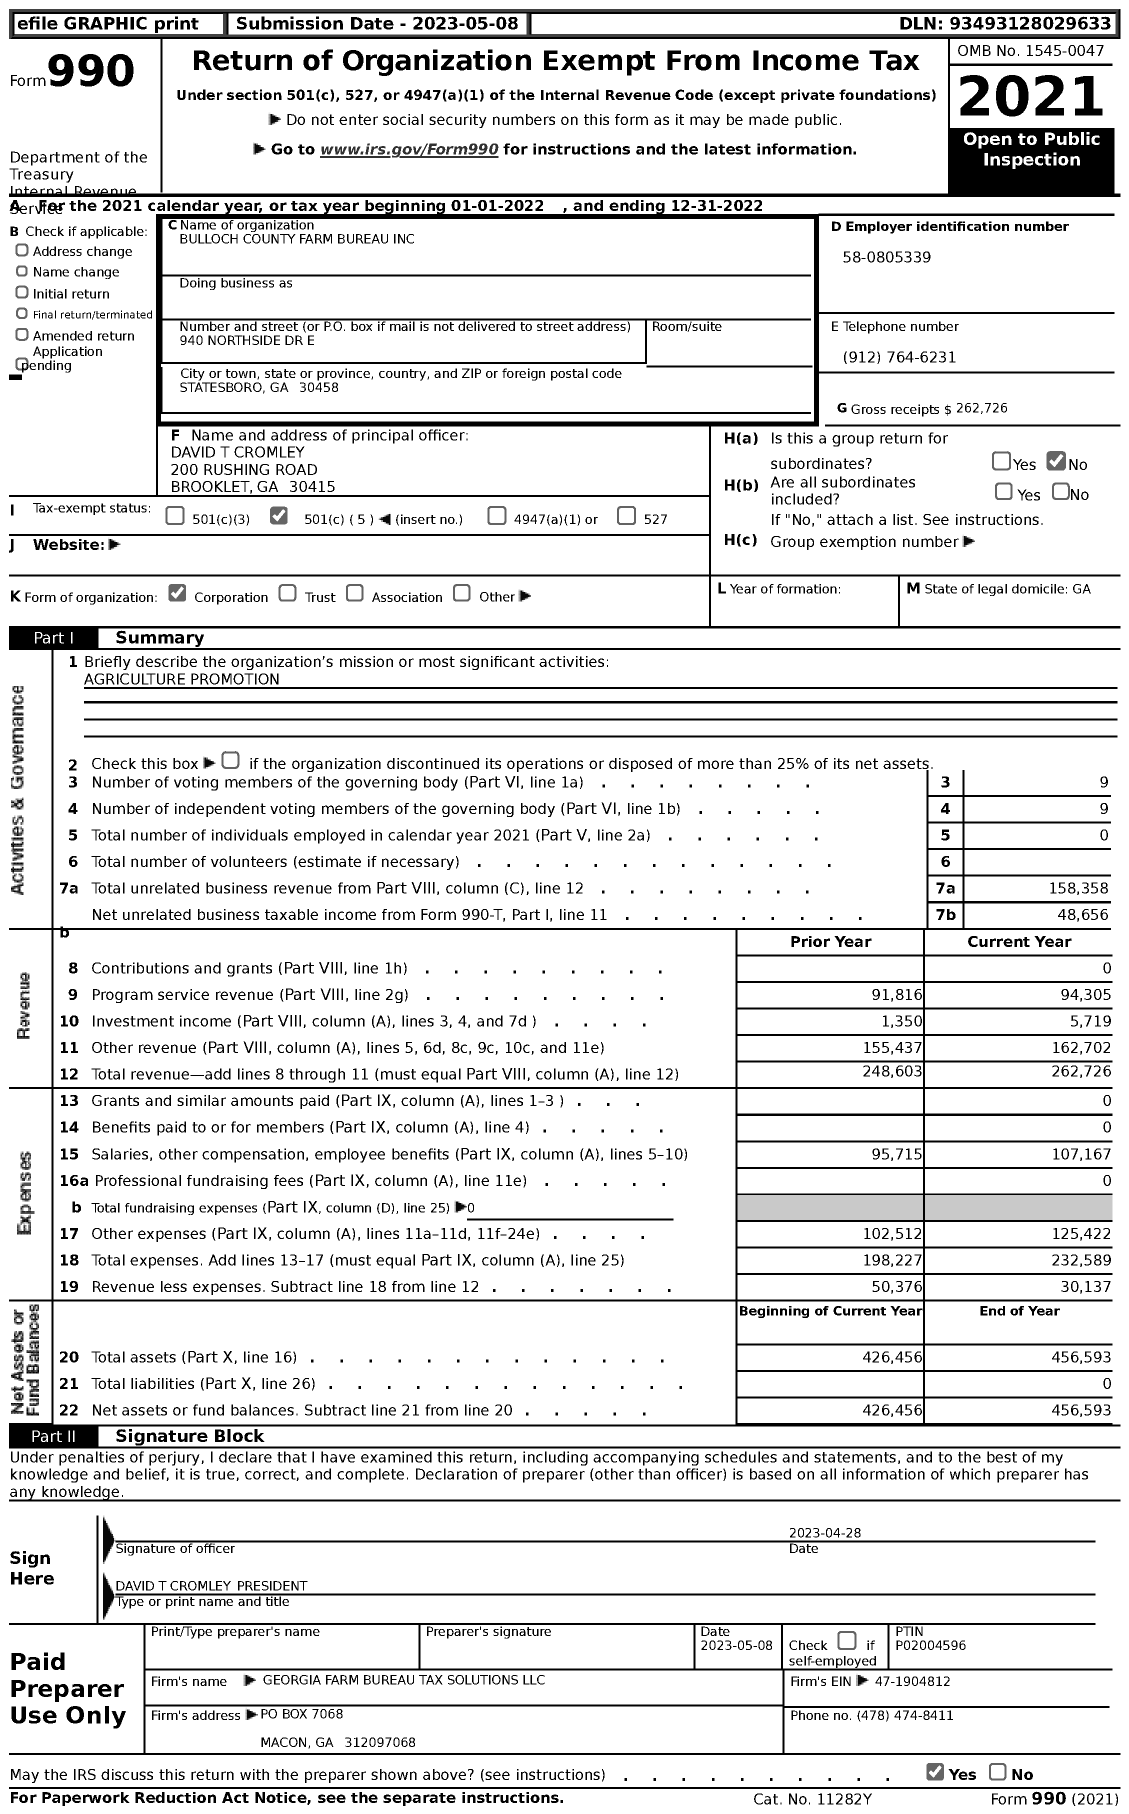 Image of first page of 2022 Form 990 for Georgia Farm Bureau Federation - Bulloch County Farm Bureau